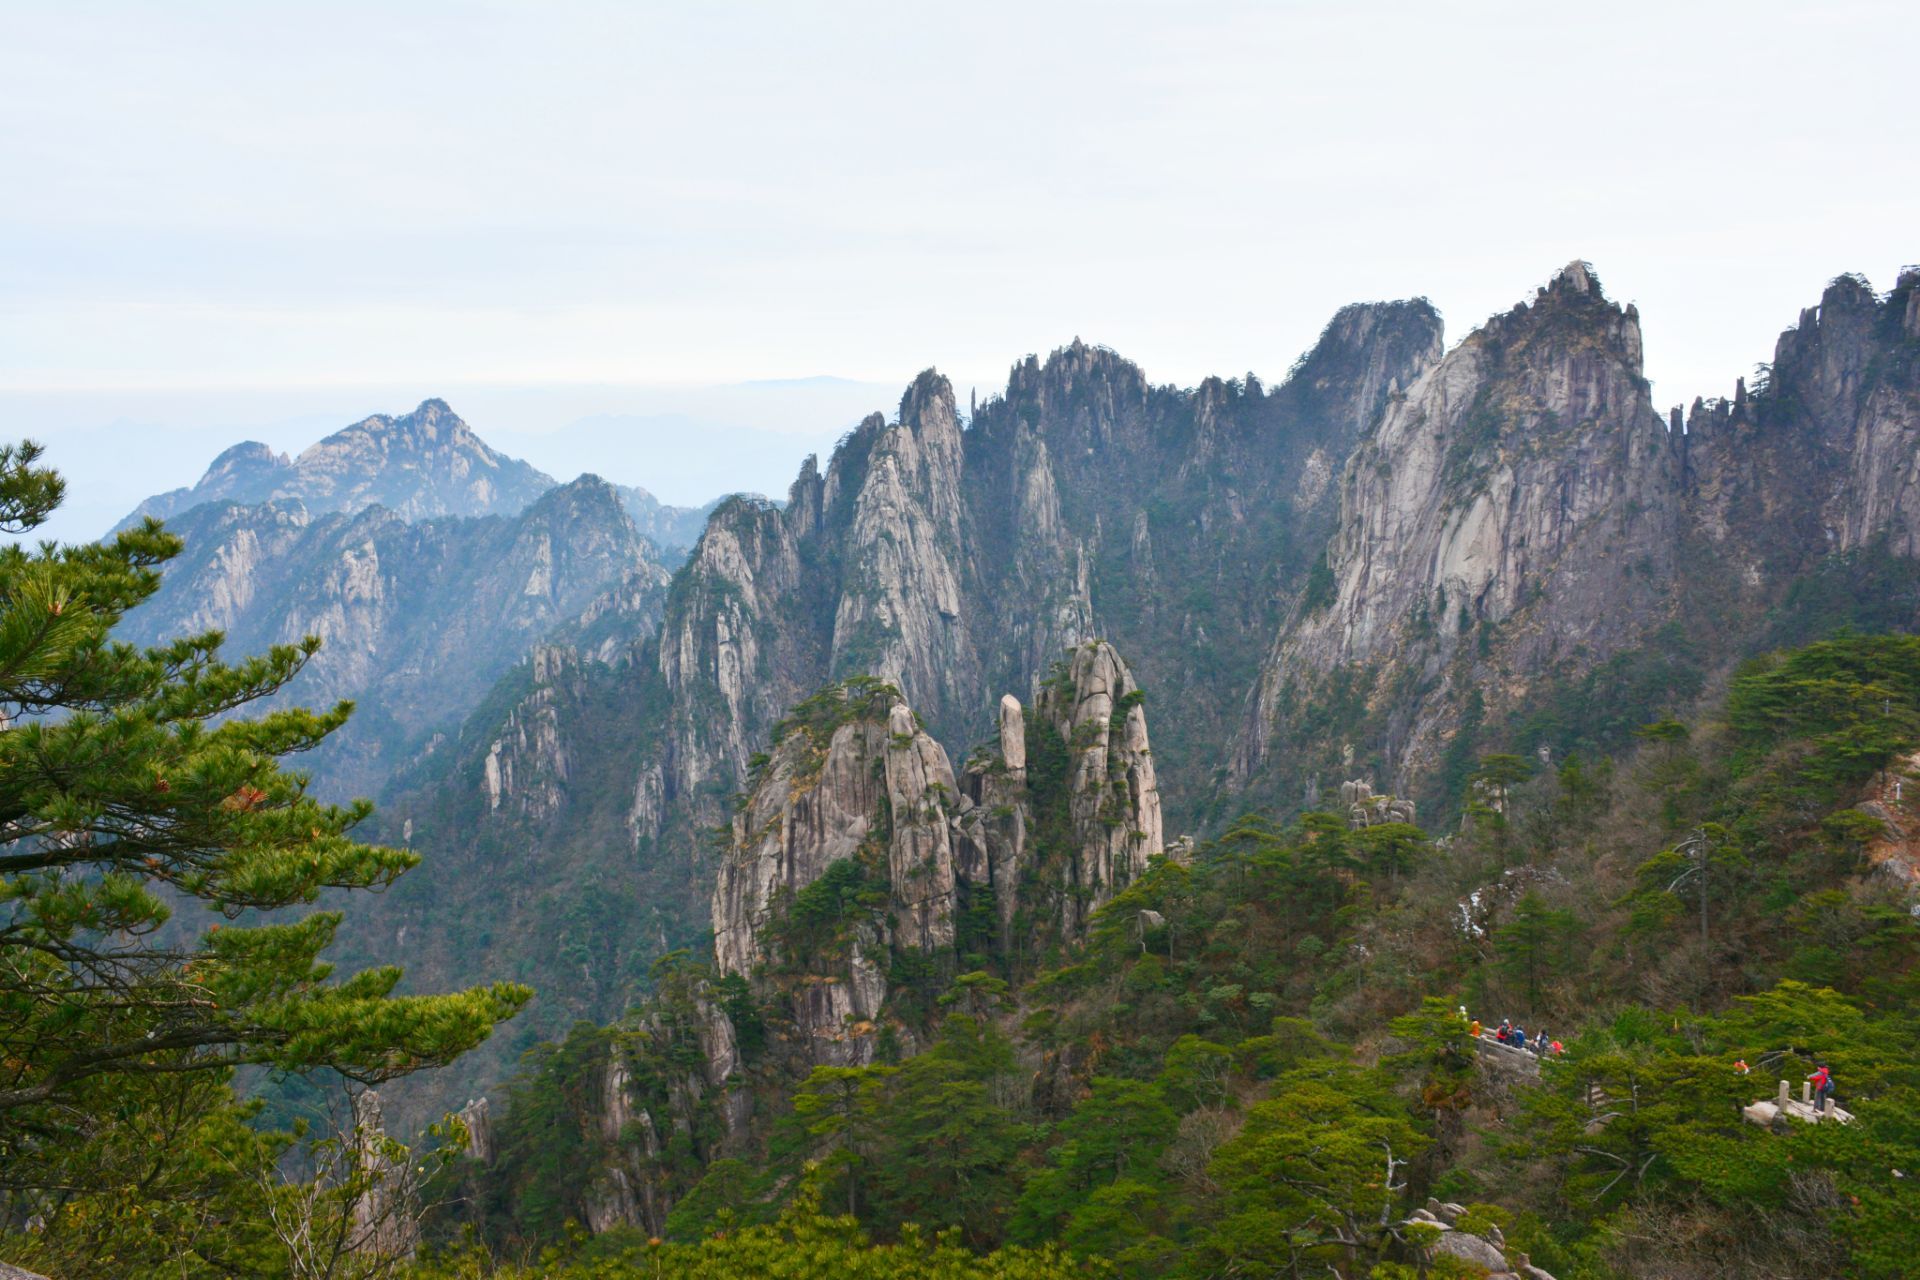 【携程攻略】江西梅岭狮子峰景点,爬山好累啊，全靠意念啊，爬到山顶～